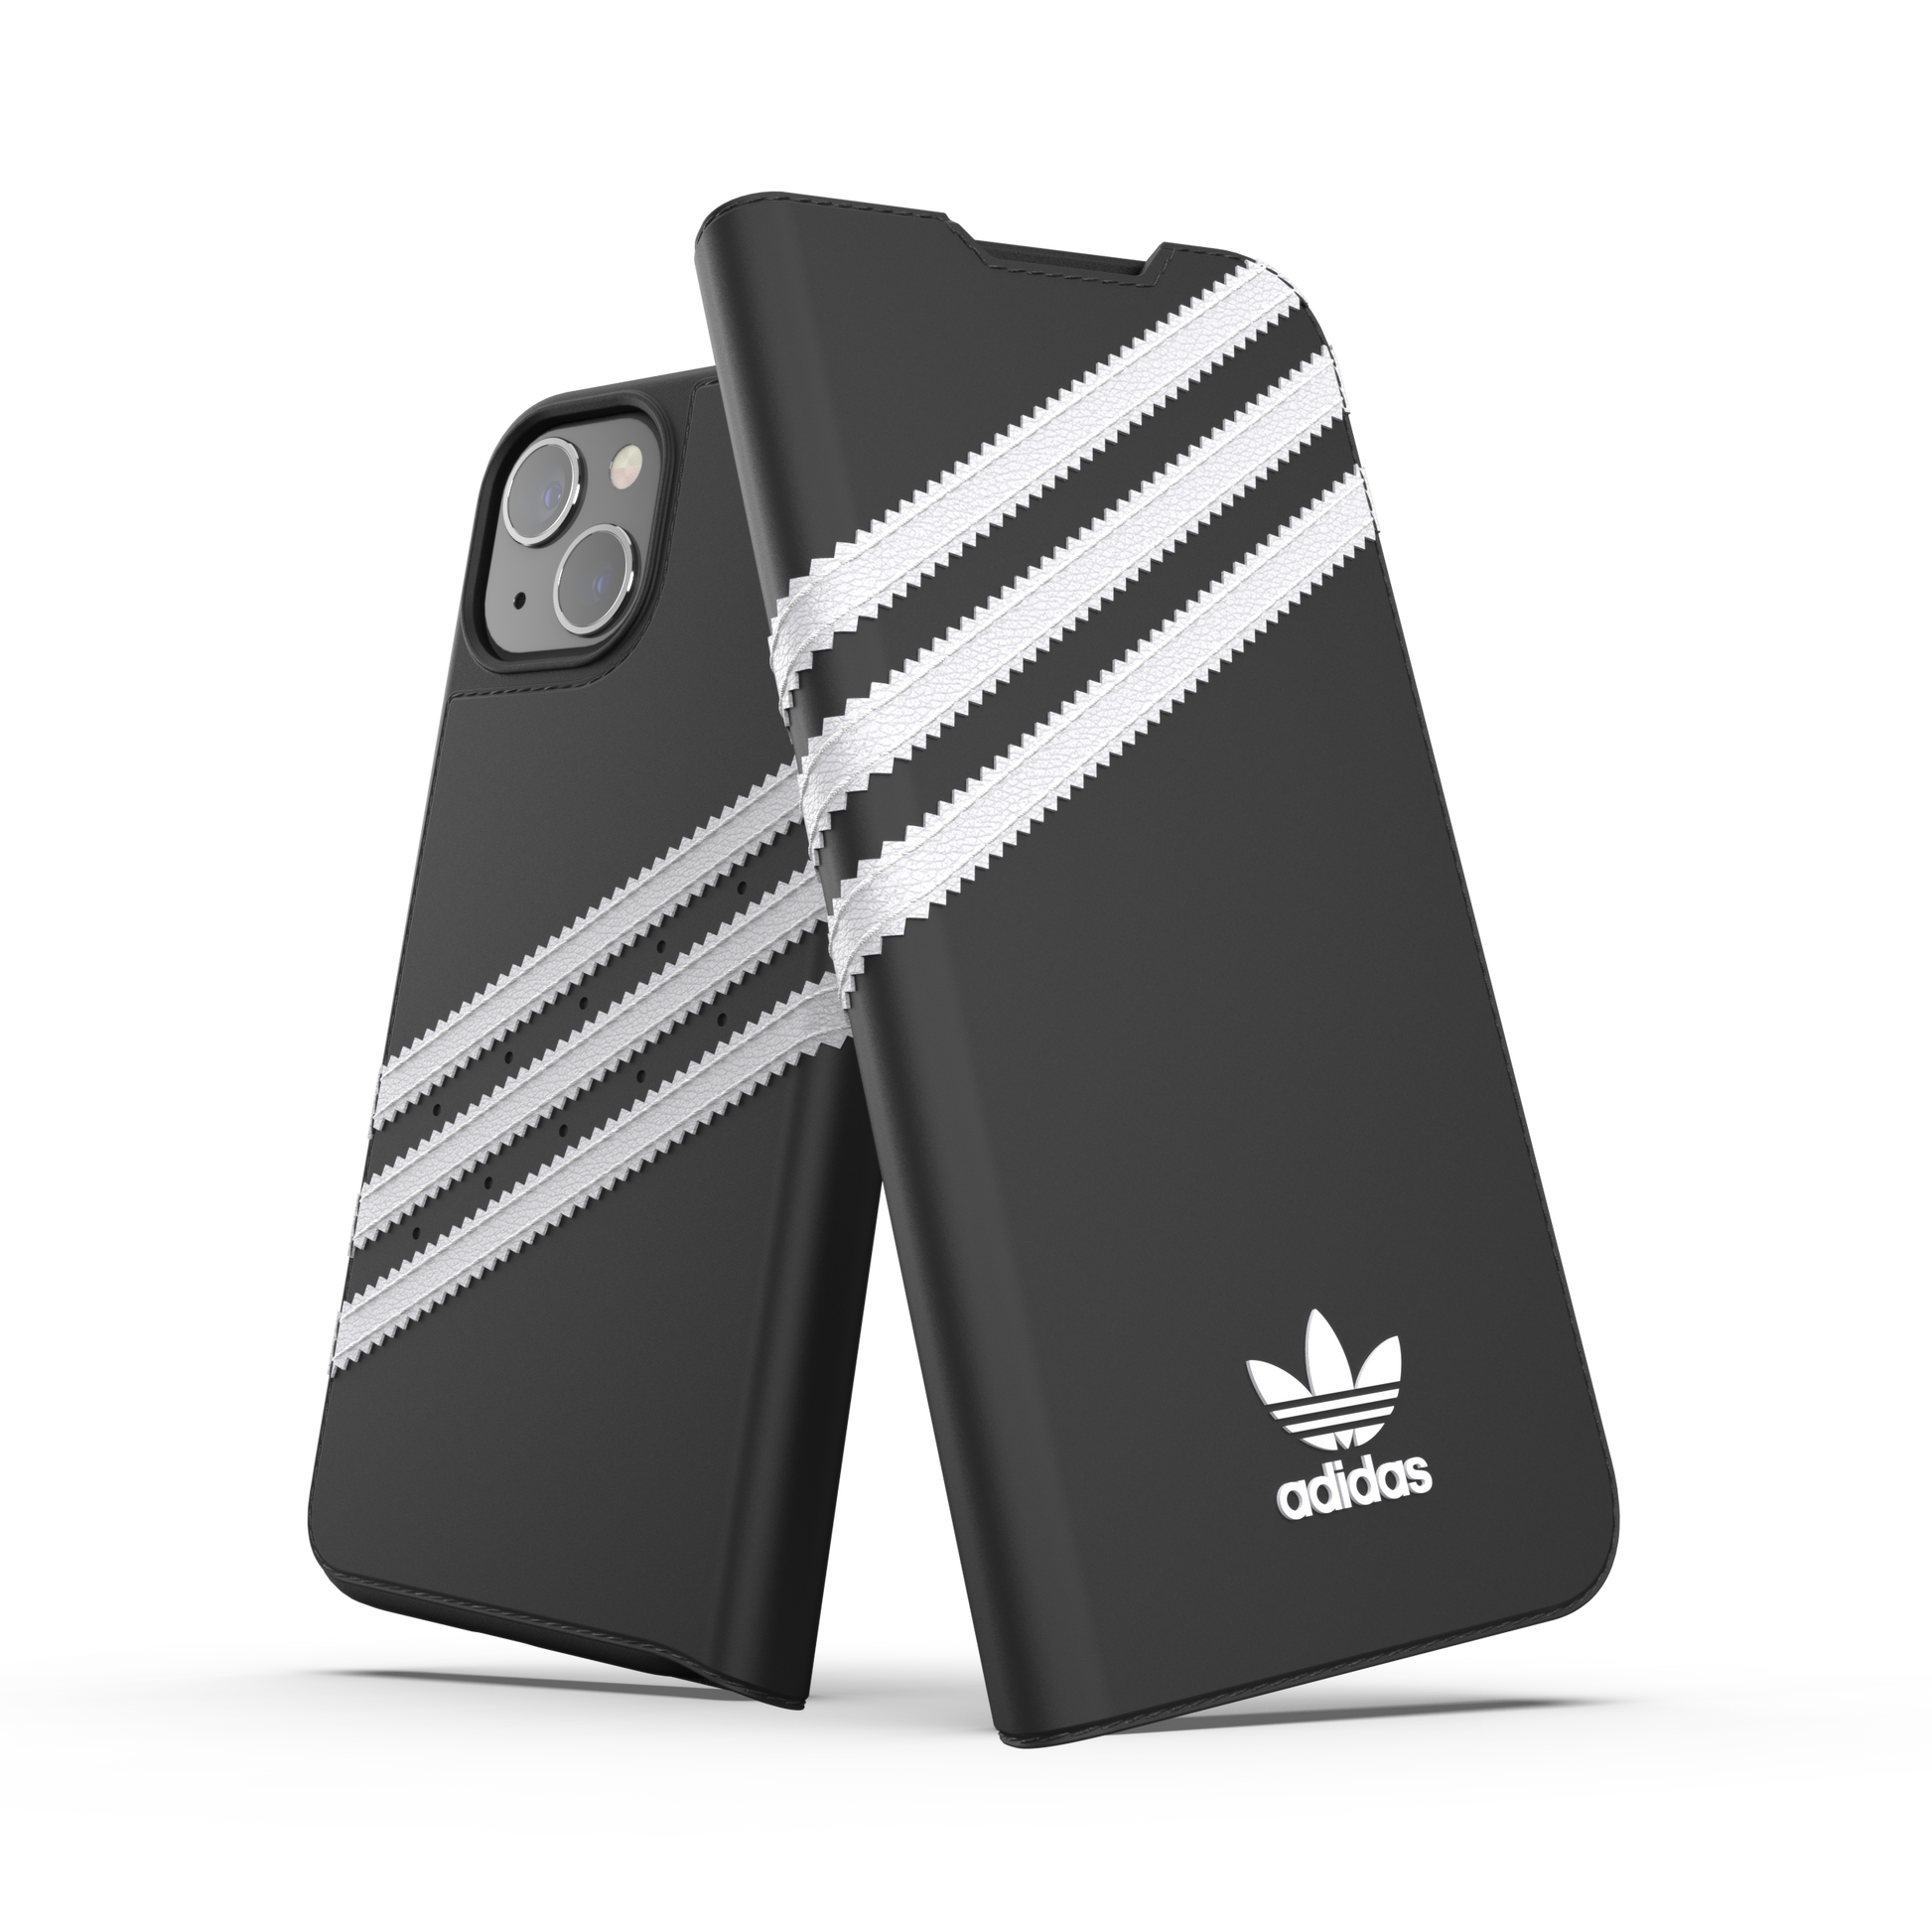 adidas Originals 3-Stripes Booklet Case Black - White iPhone 4 42244